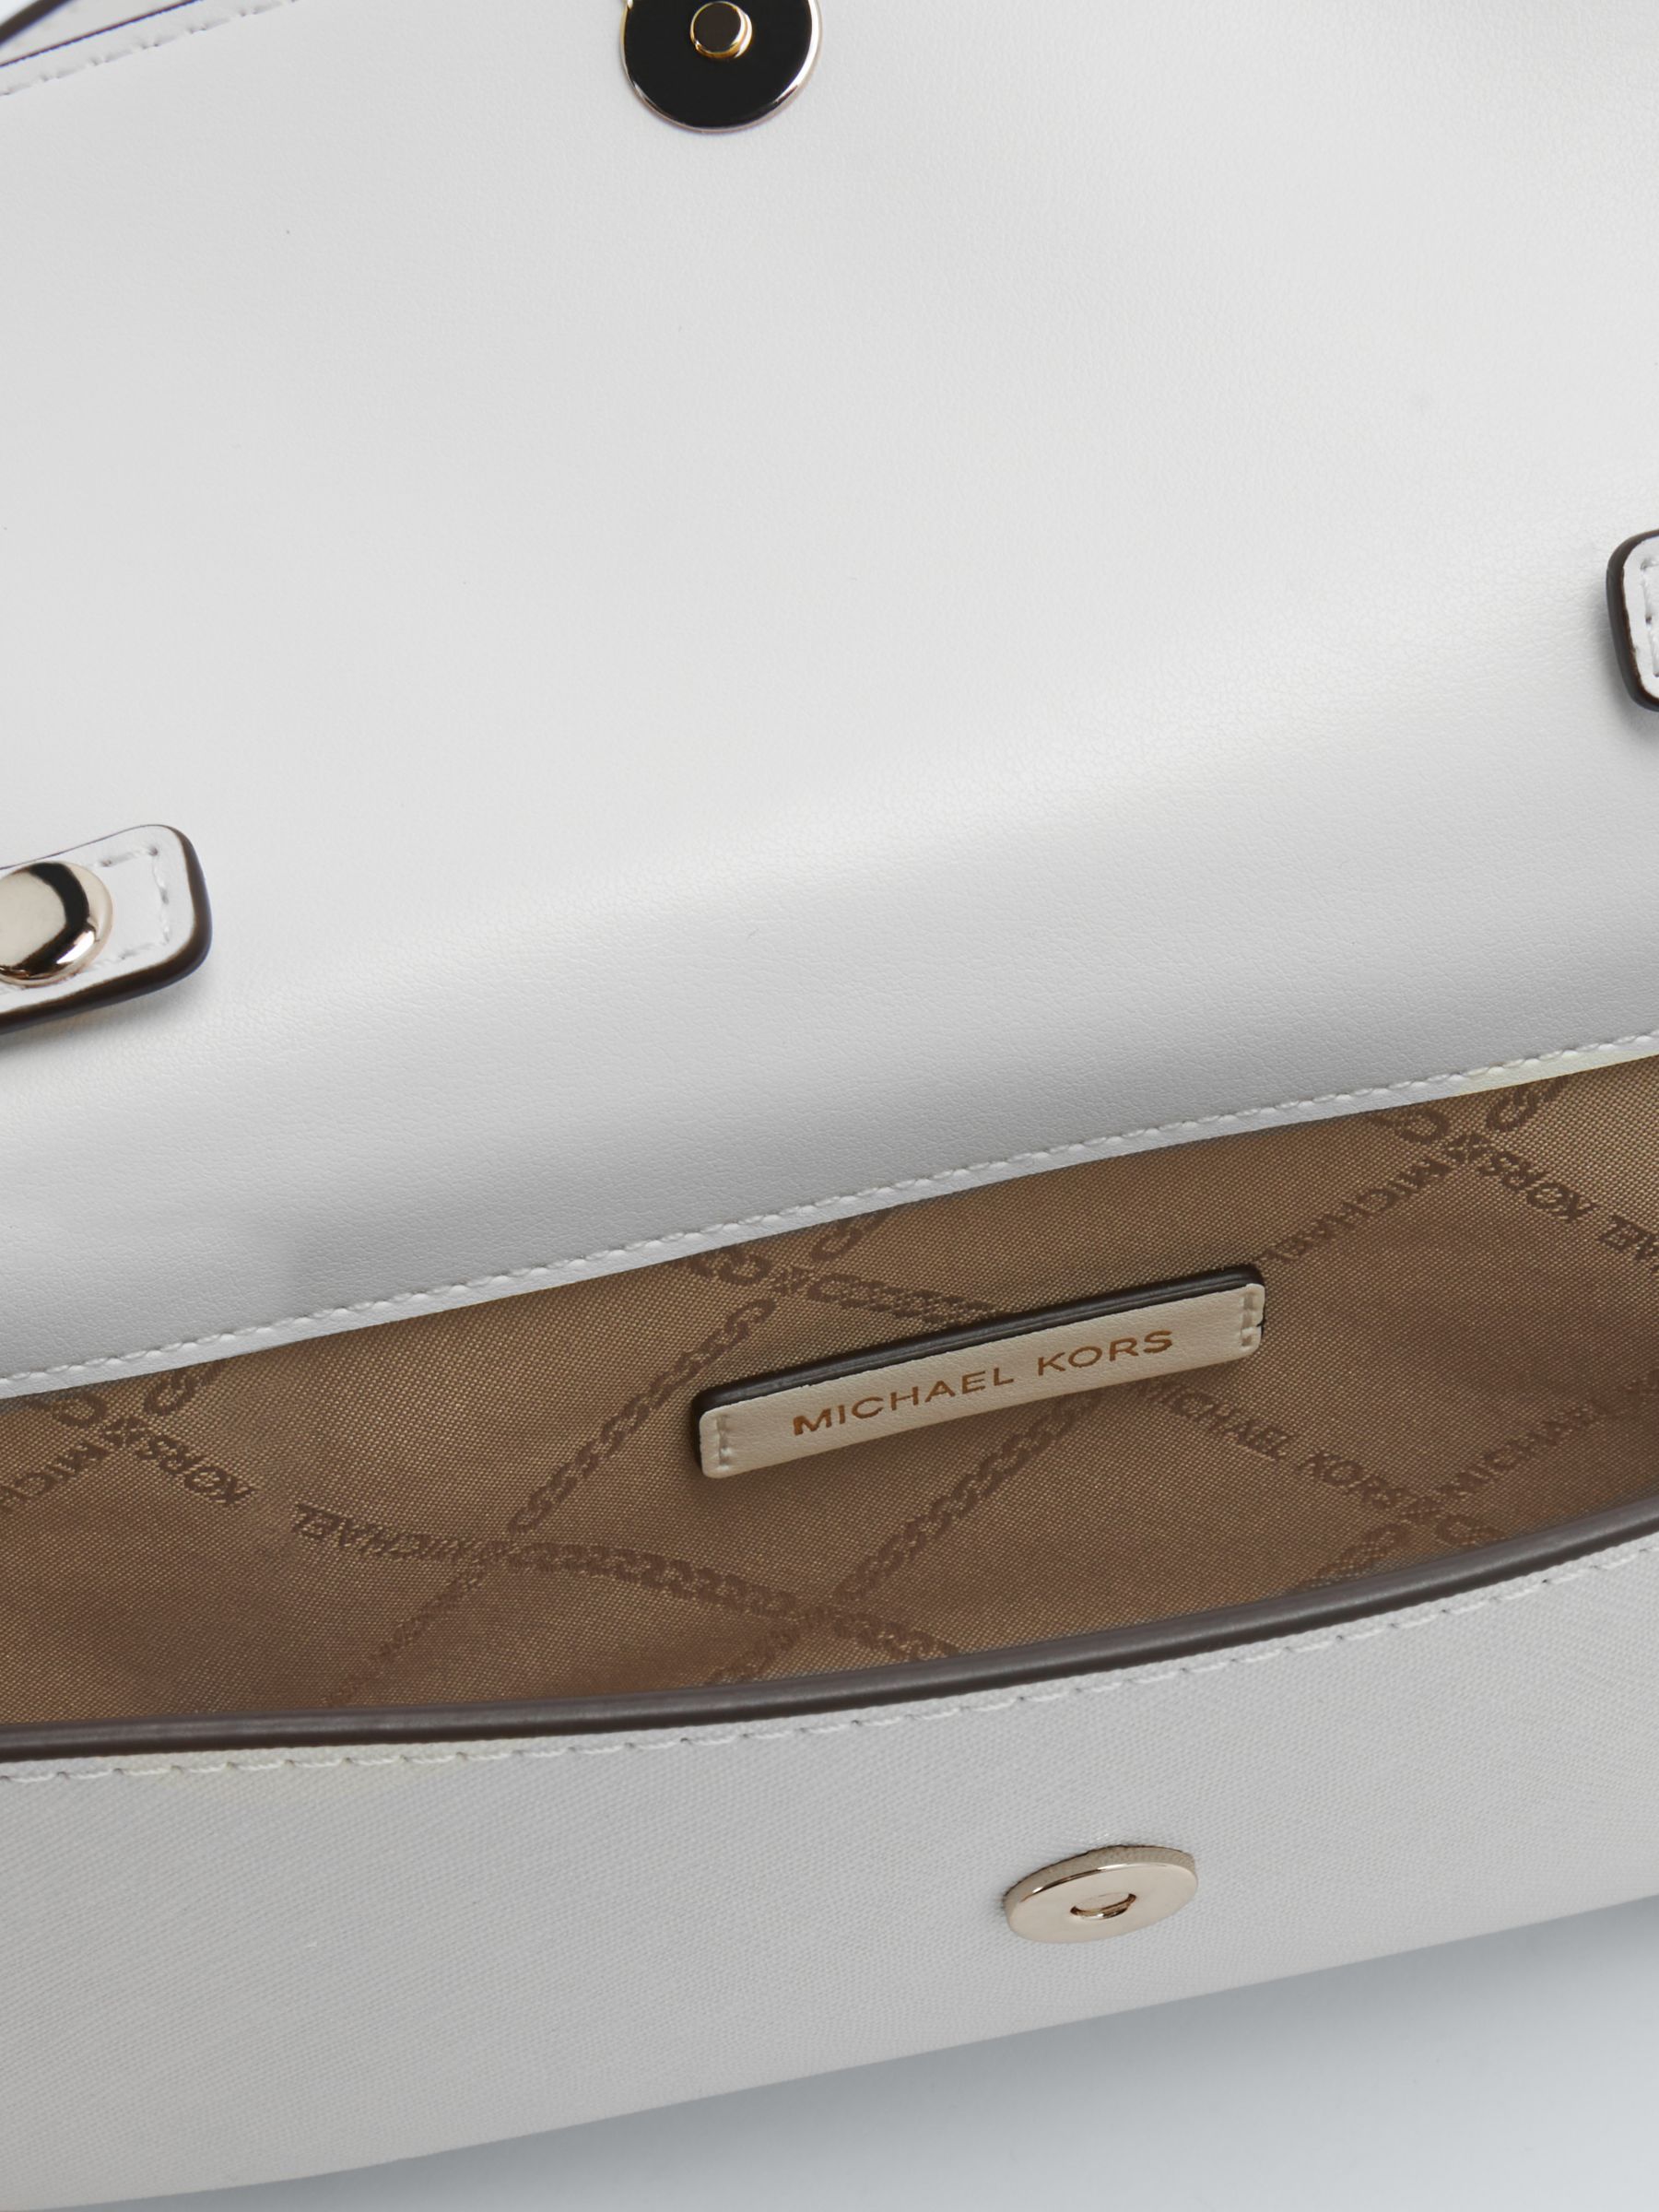 Buy Michael Kors Jet Set Leather Clutch Bag Online at johnlewis.com